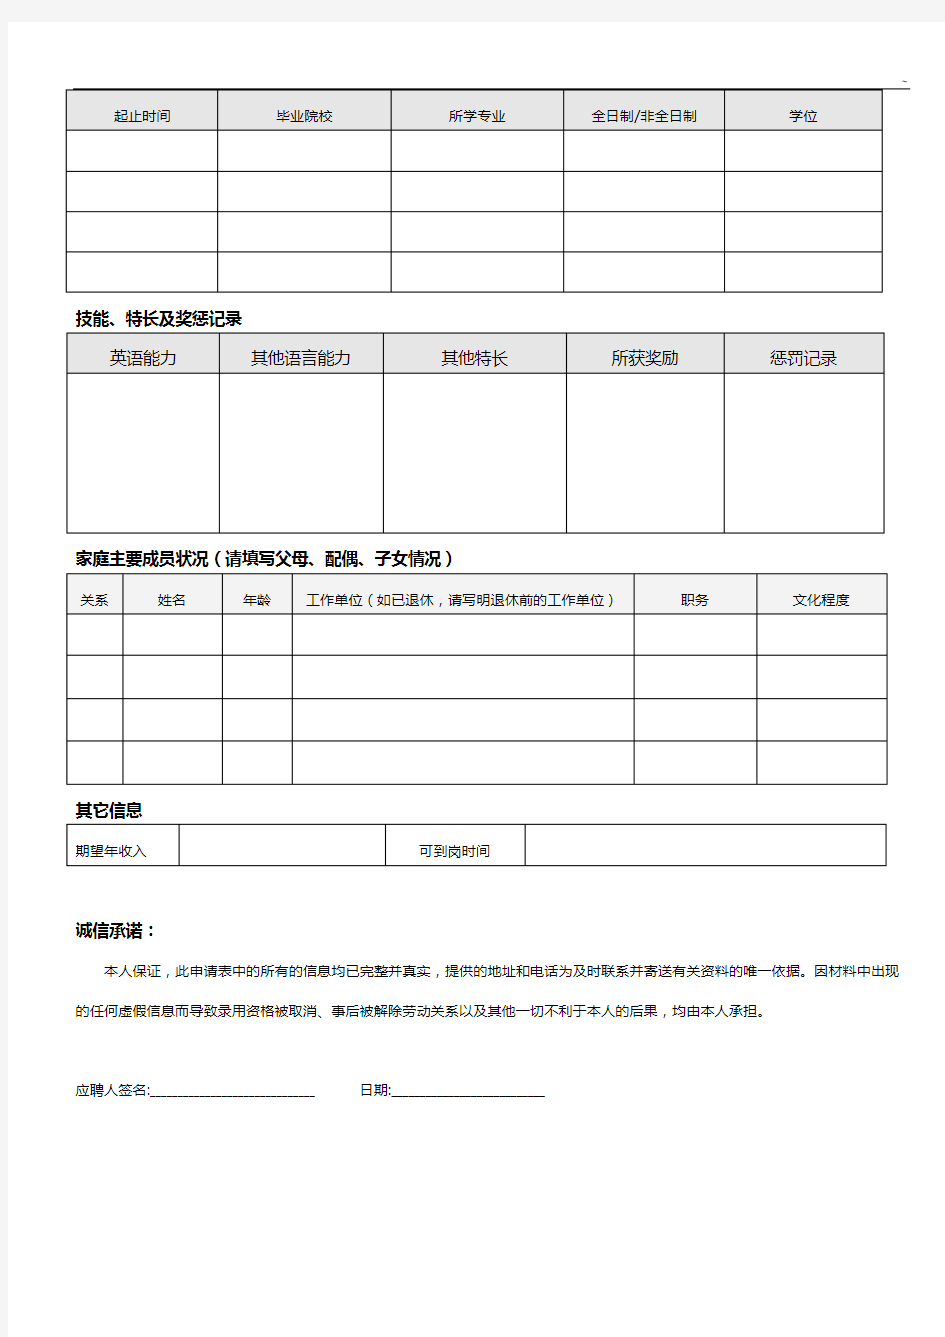 中国南方航空股份有限企业单位社会招聘应聘申请表